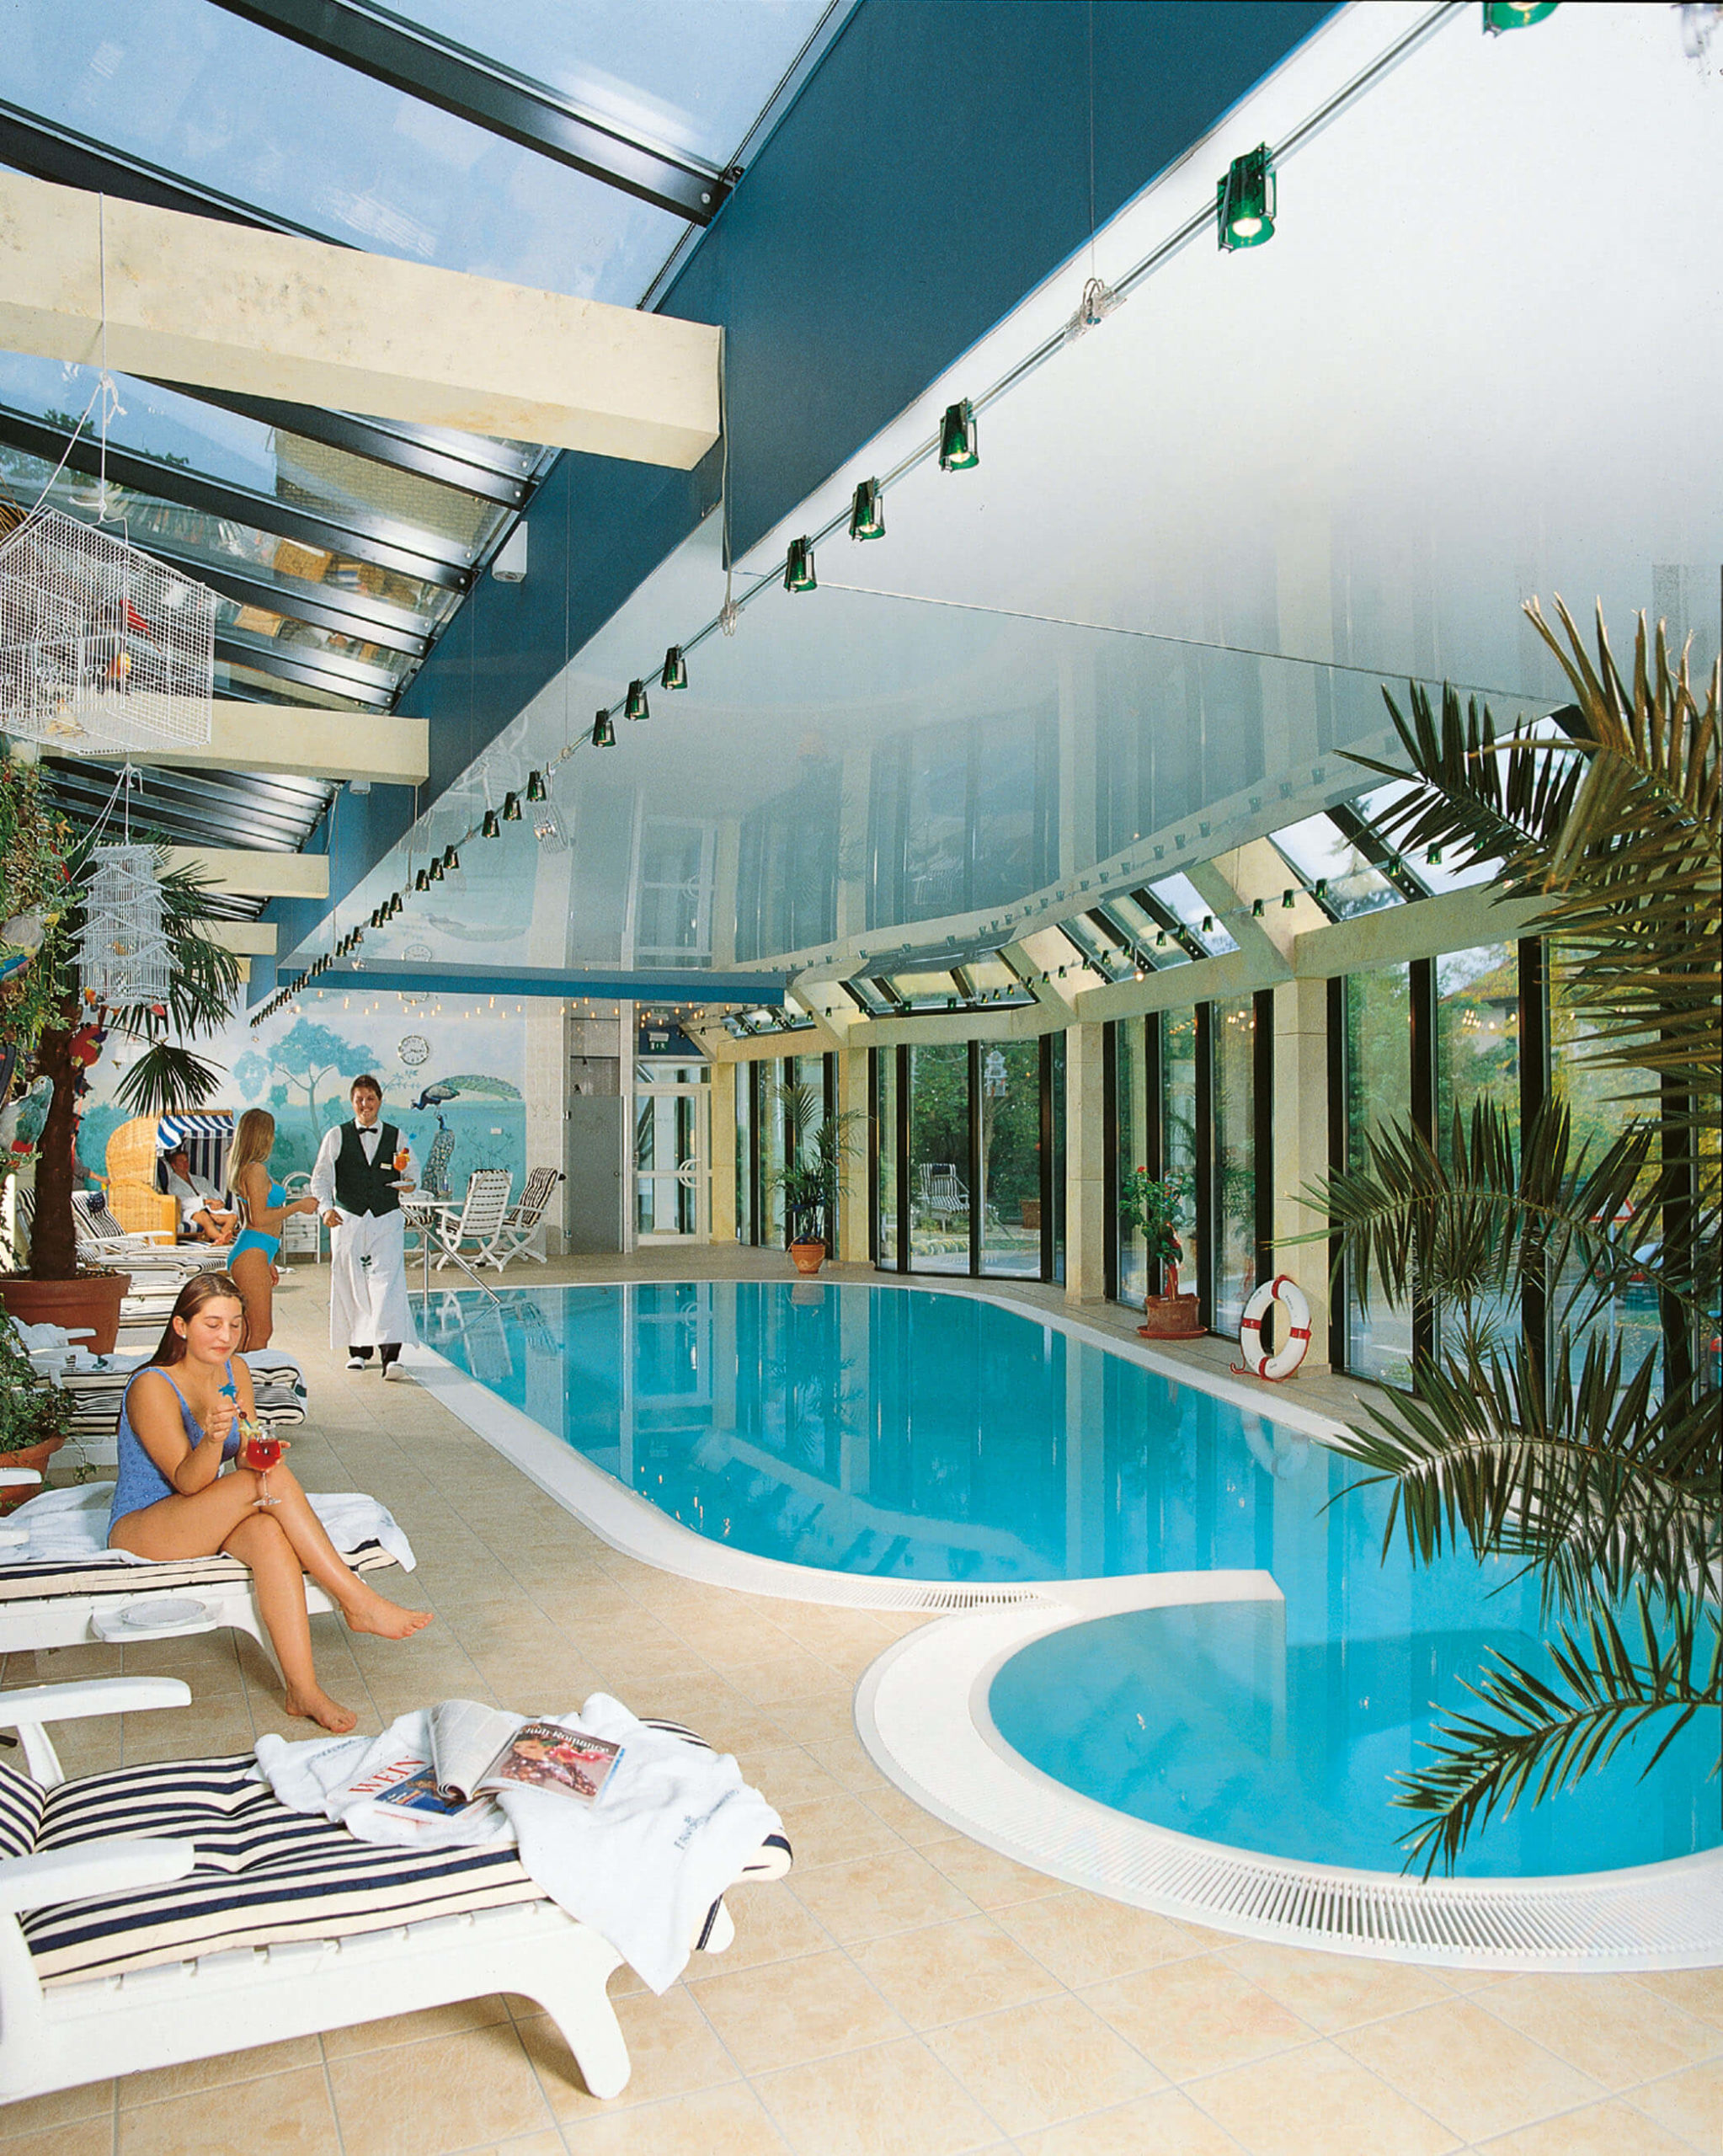 Schwimmbad des Wellnesshotels in Mainz 1998